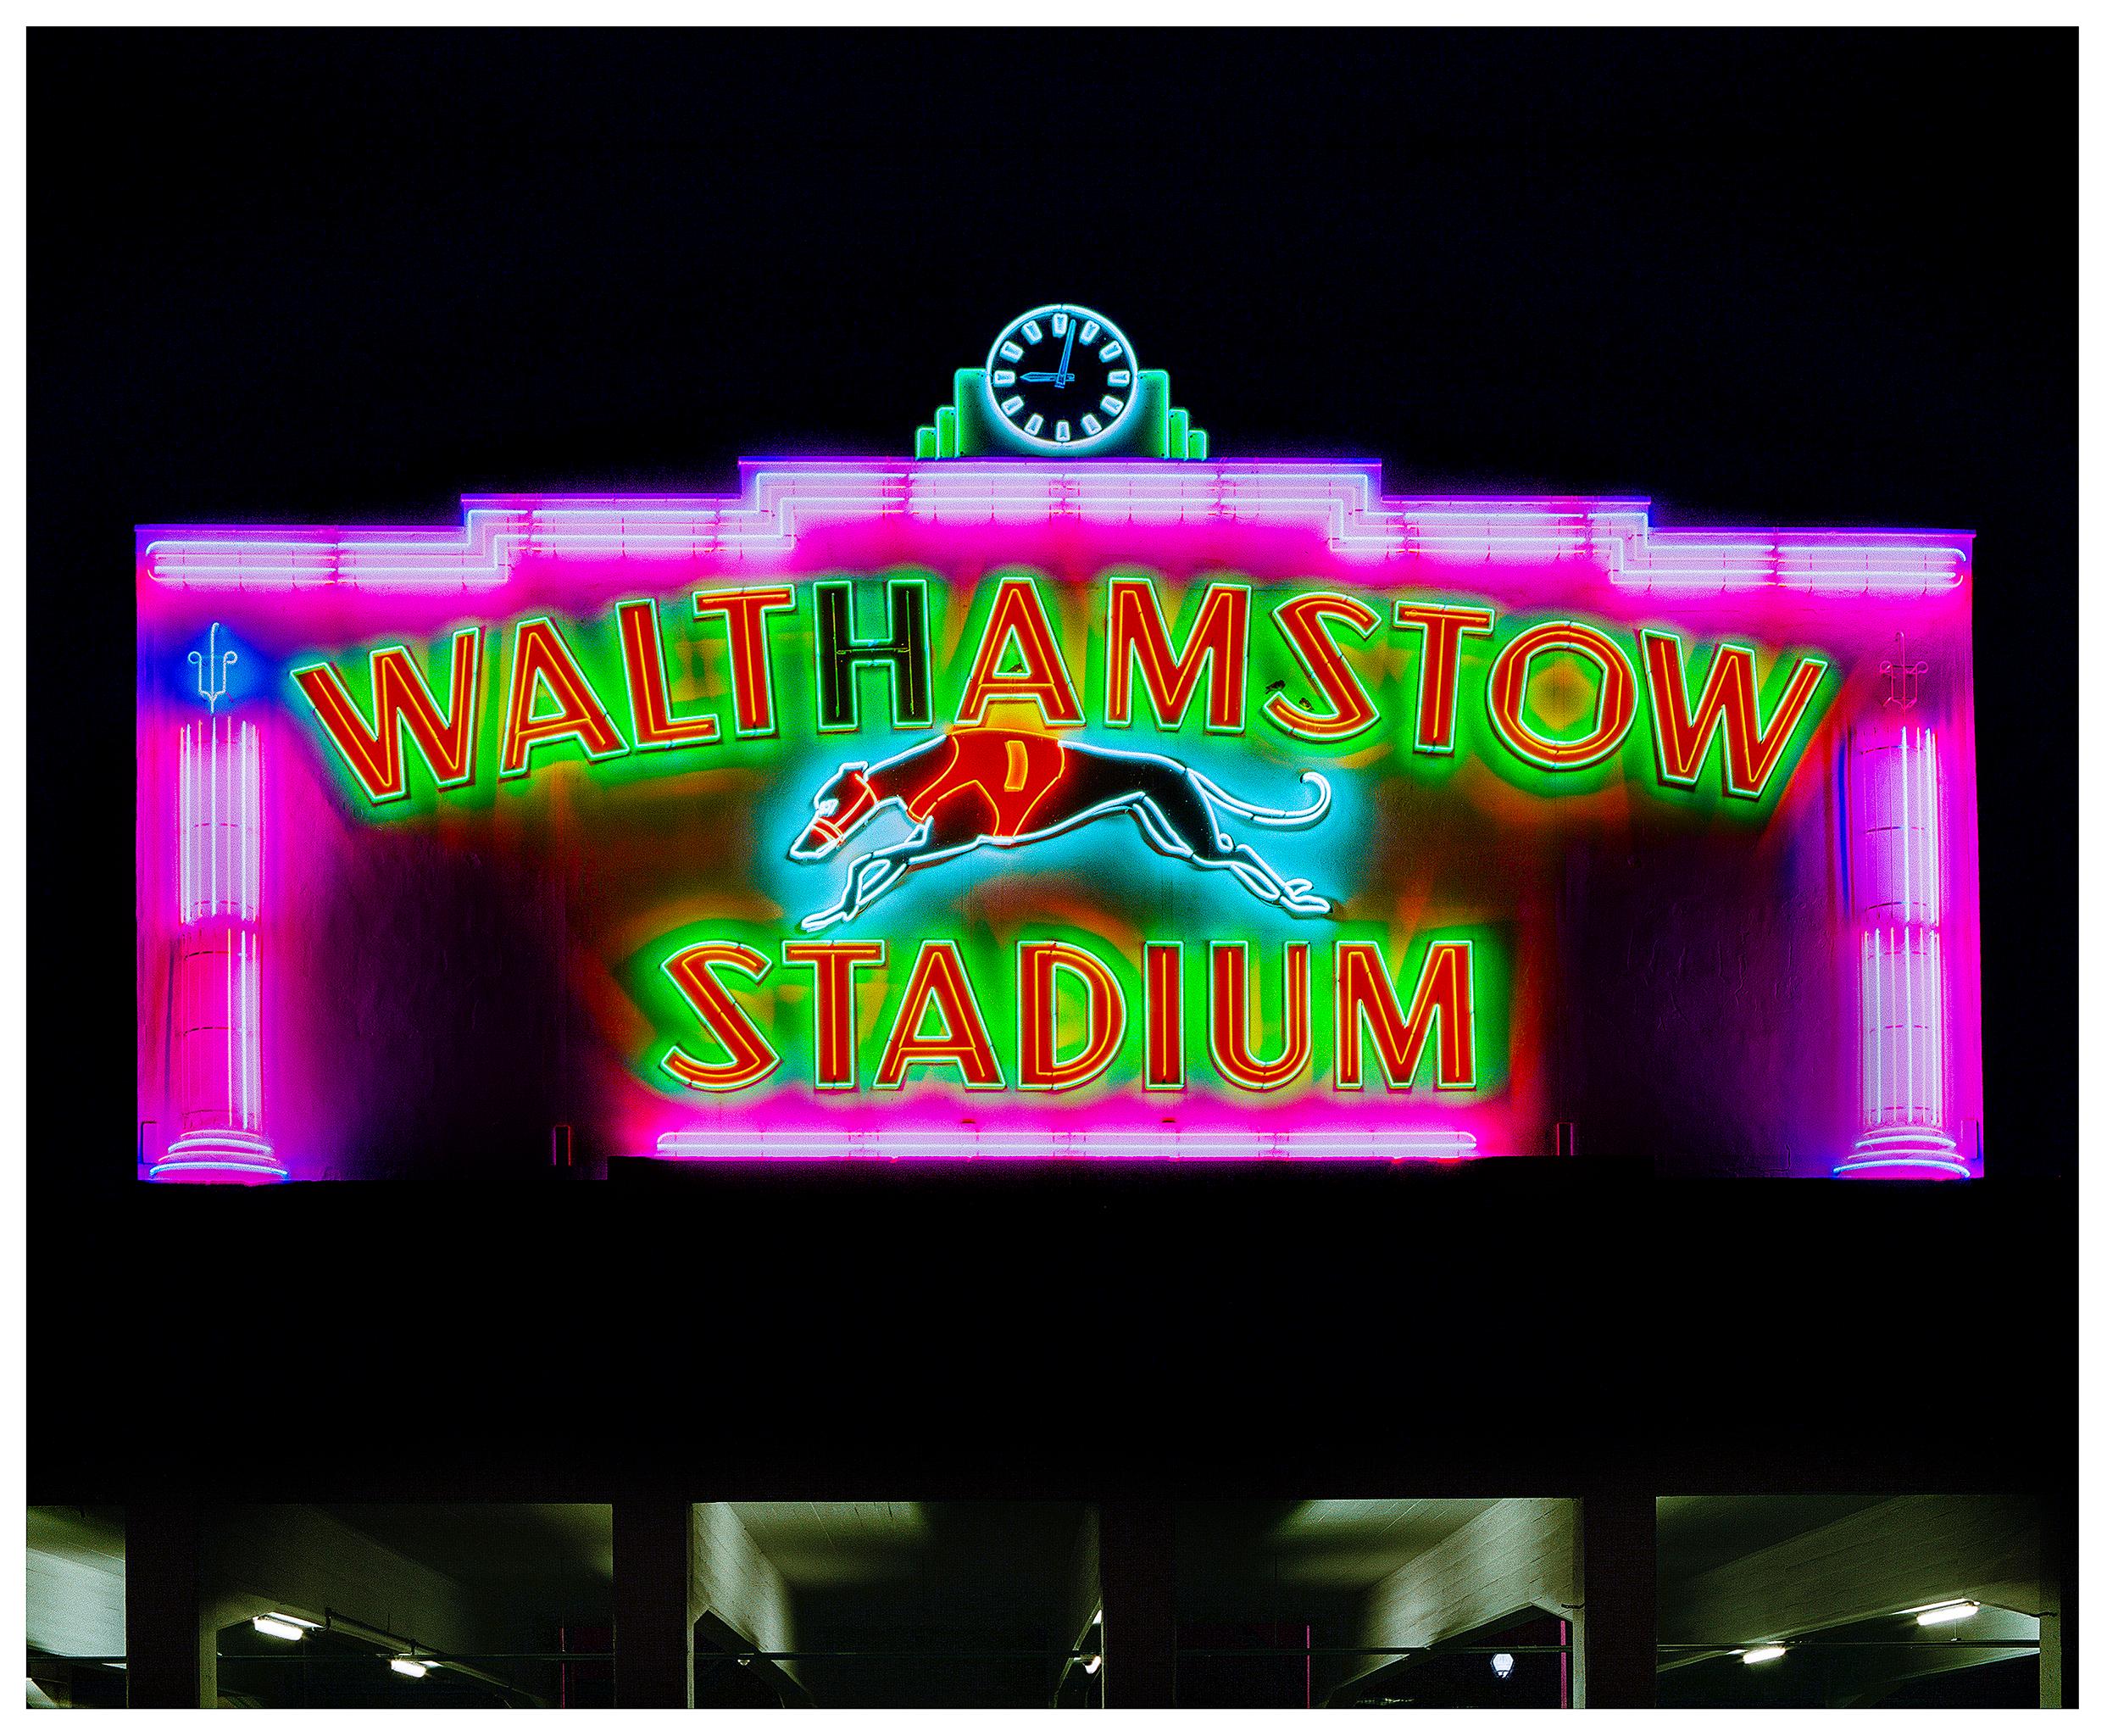 Walthamstow Stadium at Night, London – britische Farbfotografie mit Schild